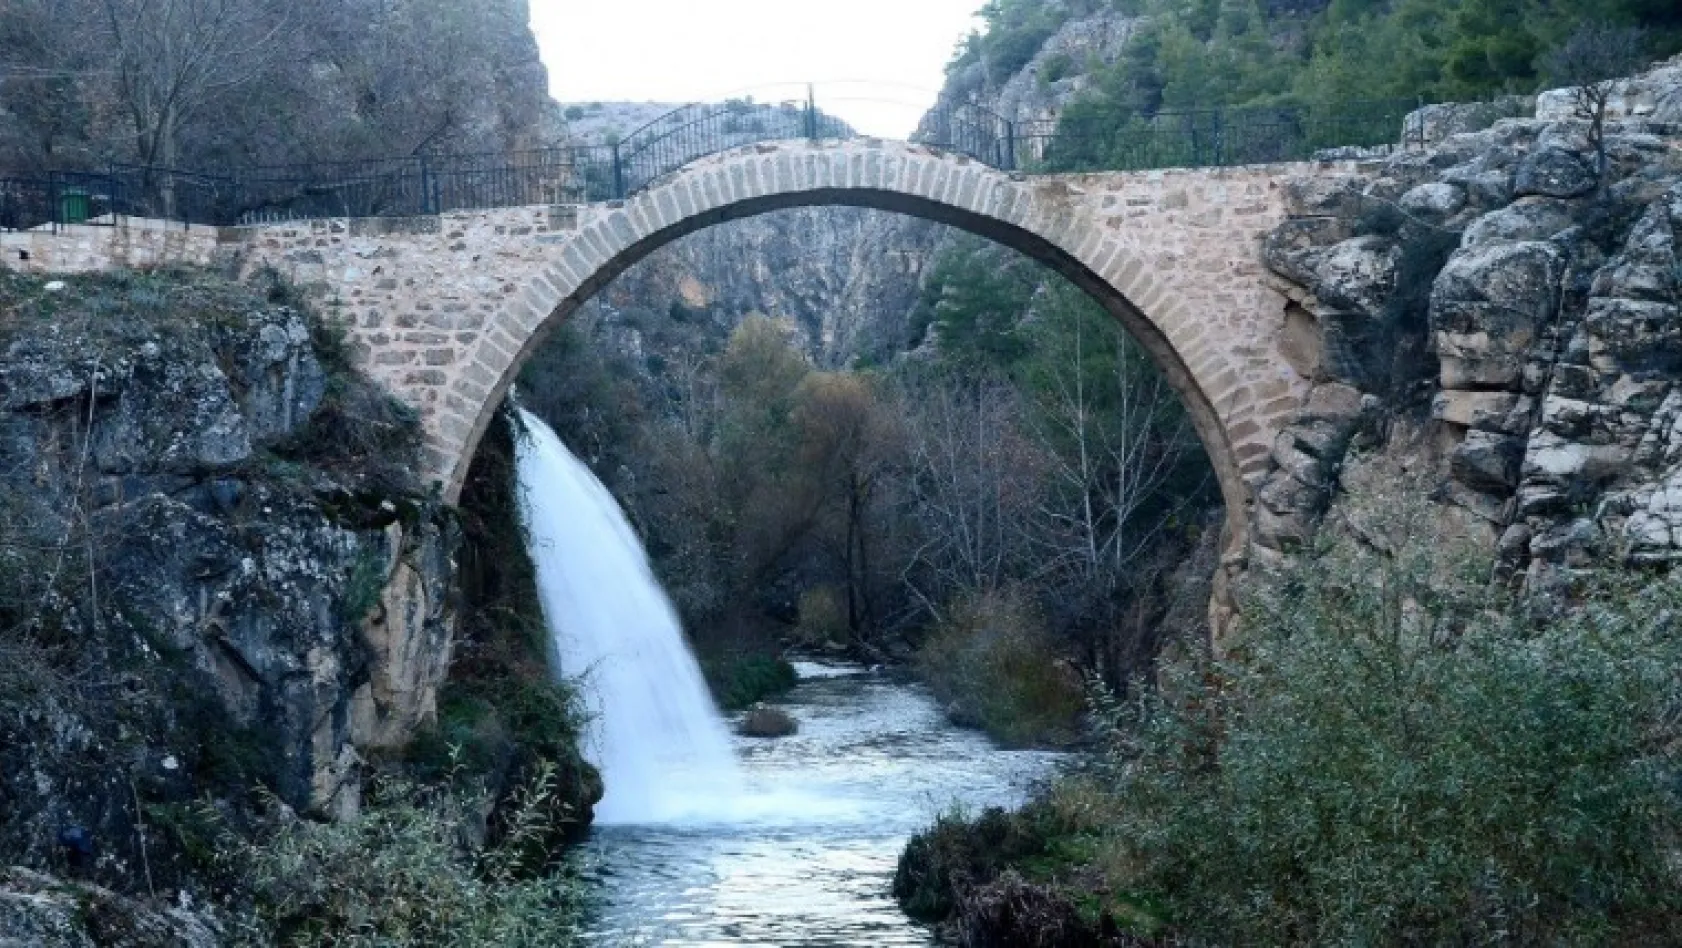 2500 yıllık Clandras Köprüsü yıllara meydan okuyor